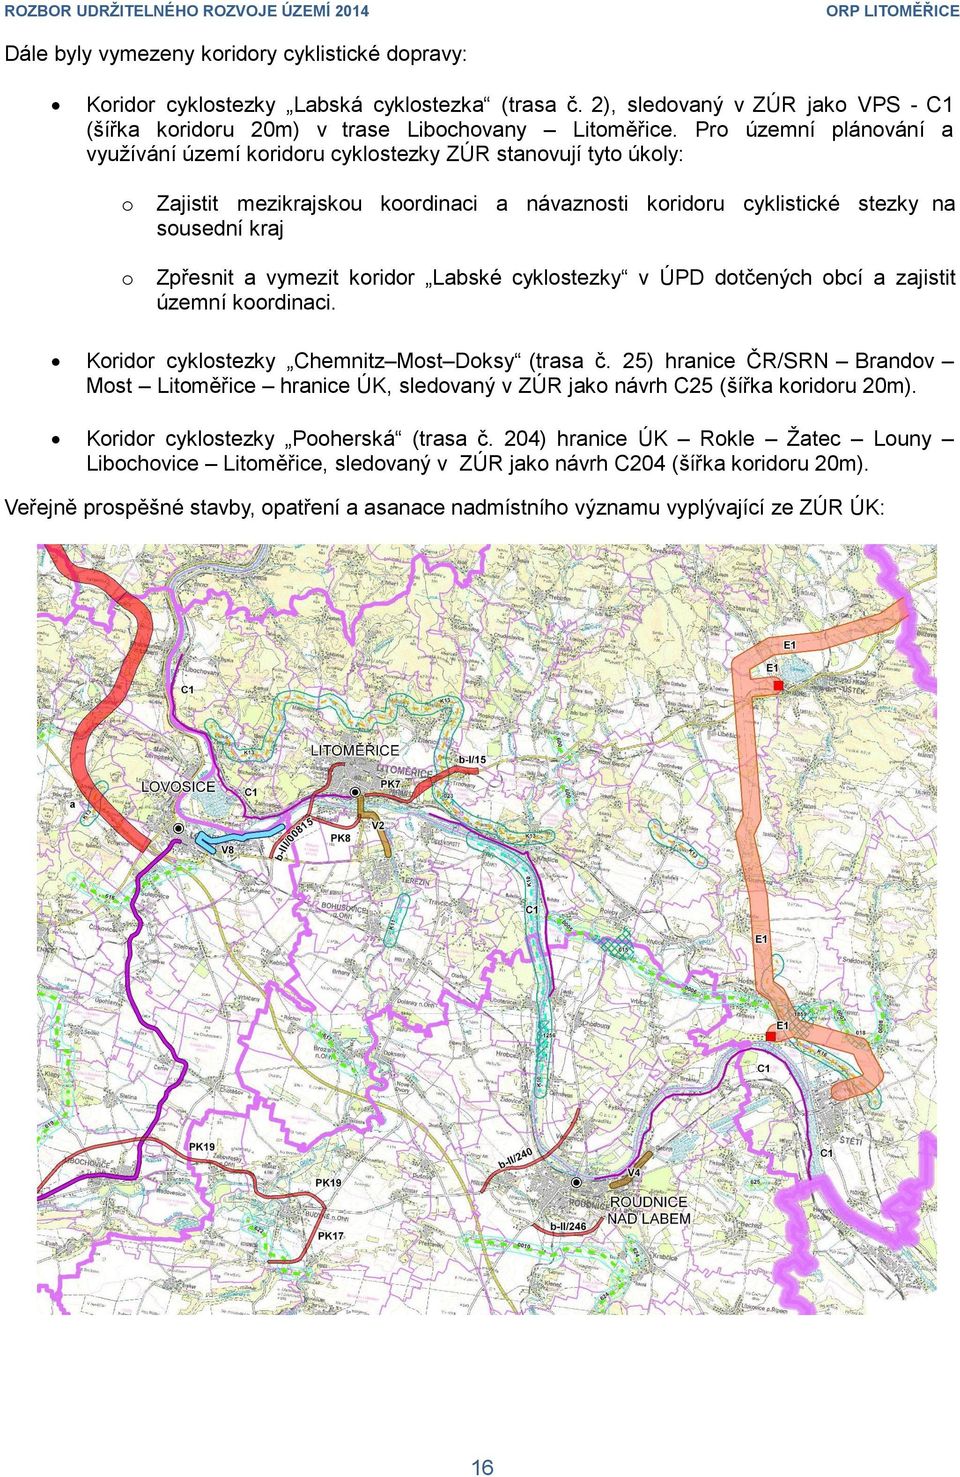 Pro územní plánování a využívání území koridoru cyklostezky ZÚR stanovují tyto úkoly: o Zajistit mezikrajskou koordinaci a návaznosti koridoru cyklistické stezky na sousední kraj o Zpřesnit a vymezit